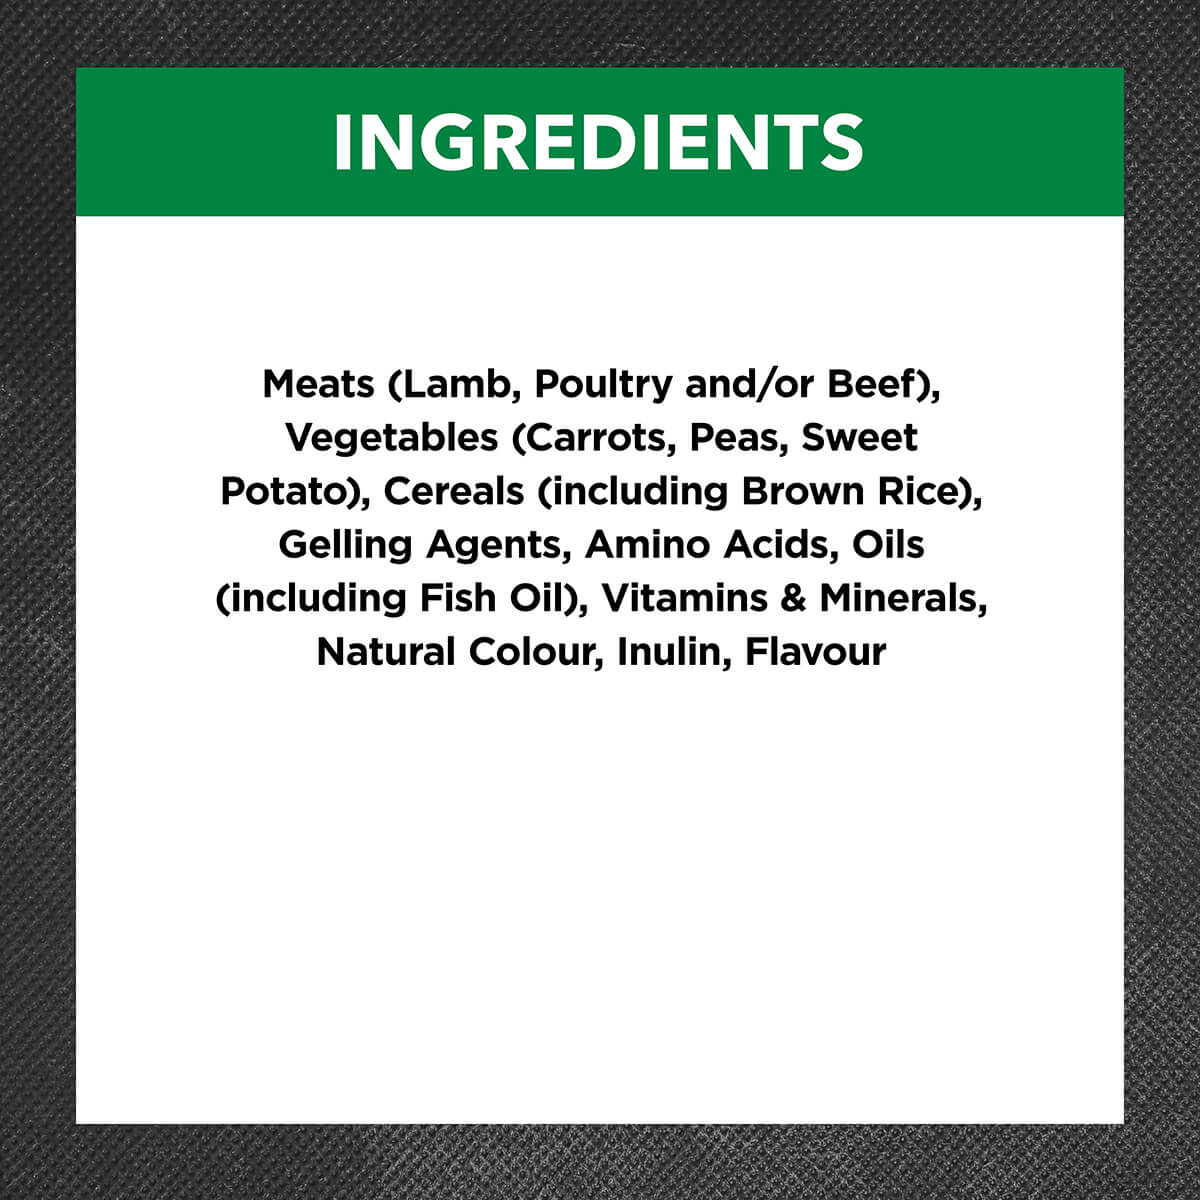 Ivory Coat Holistic Nutrition Adult Lamb & Brown Rice Loaf Wet Dog Food 400g (100000024732) [default_color]